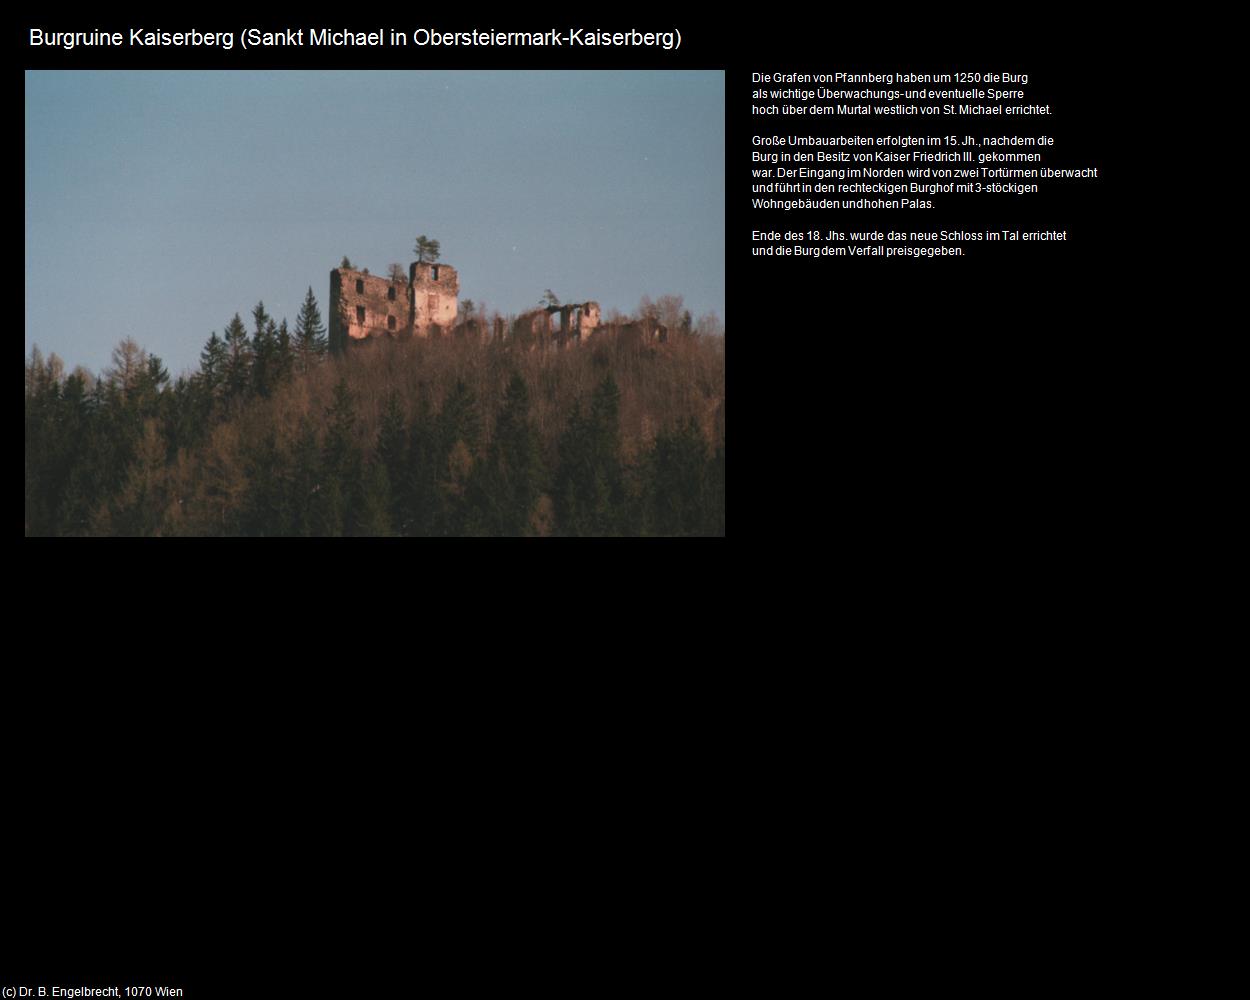 Burgruine Kaiserberg (Kaiserberg) (Sankt Michael in Obersteiermark) in Kulturatlas-STEIERMARK